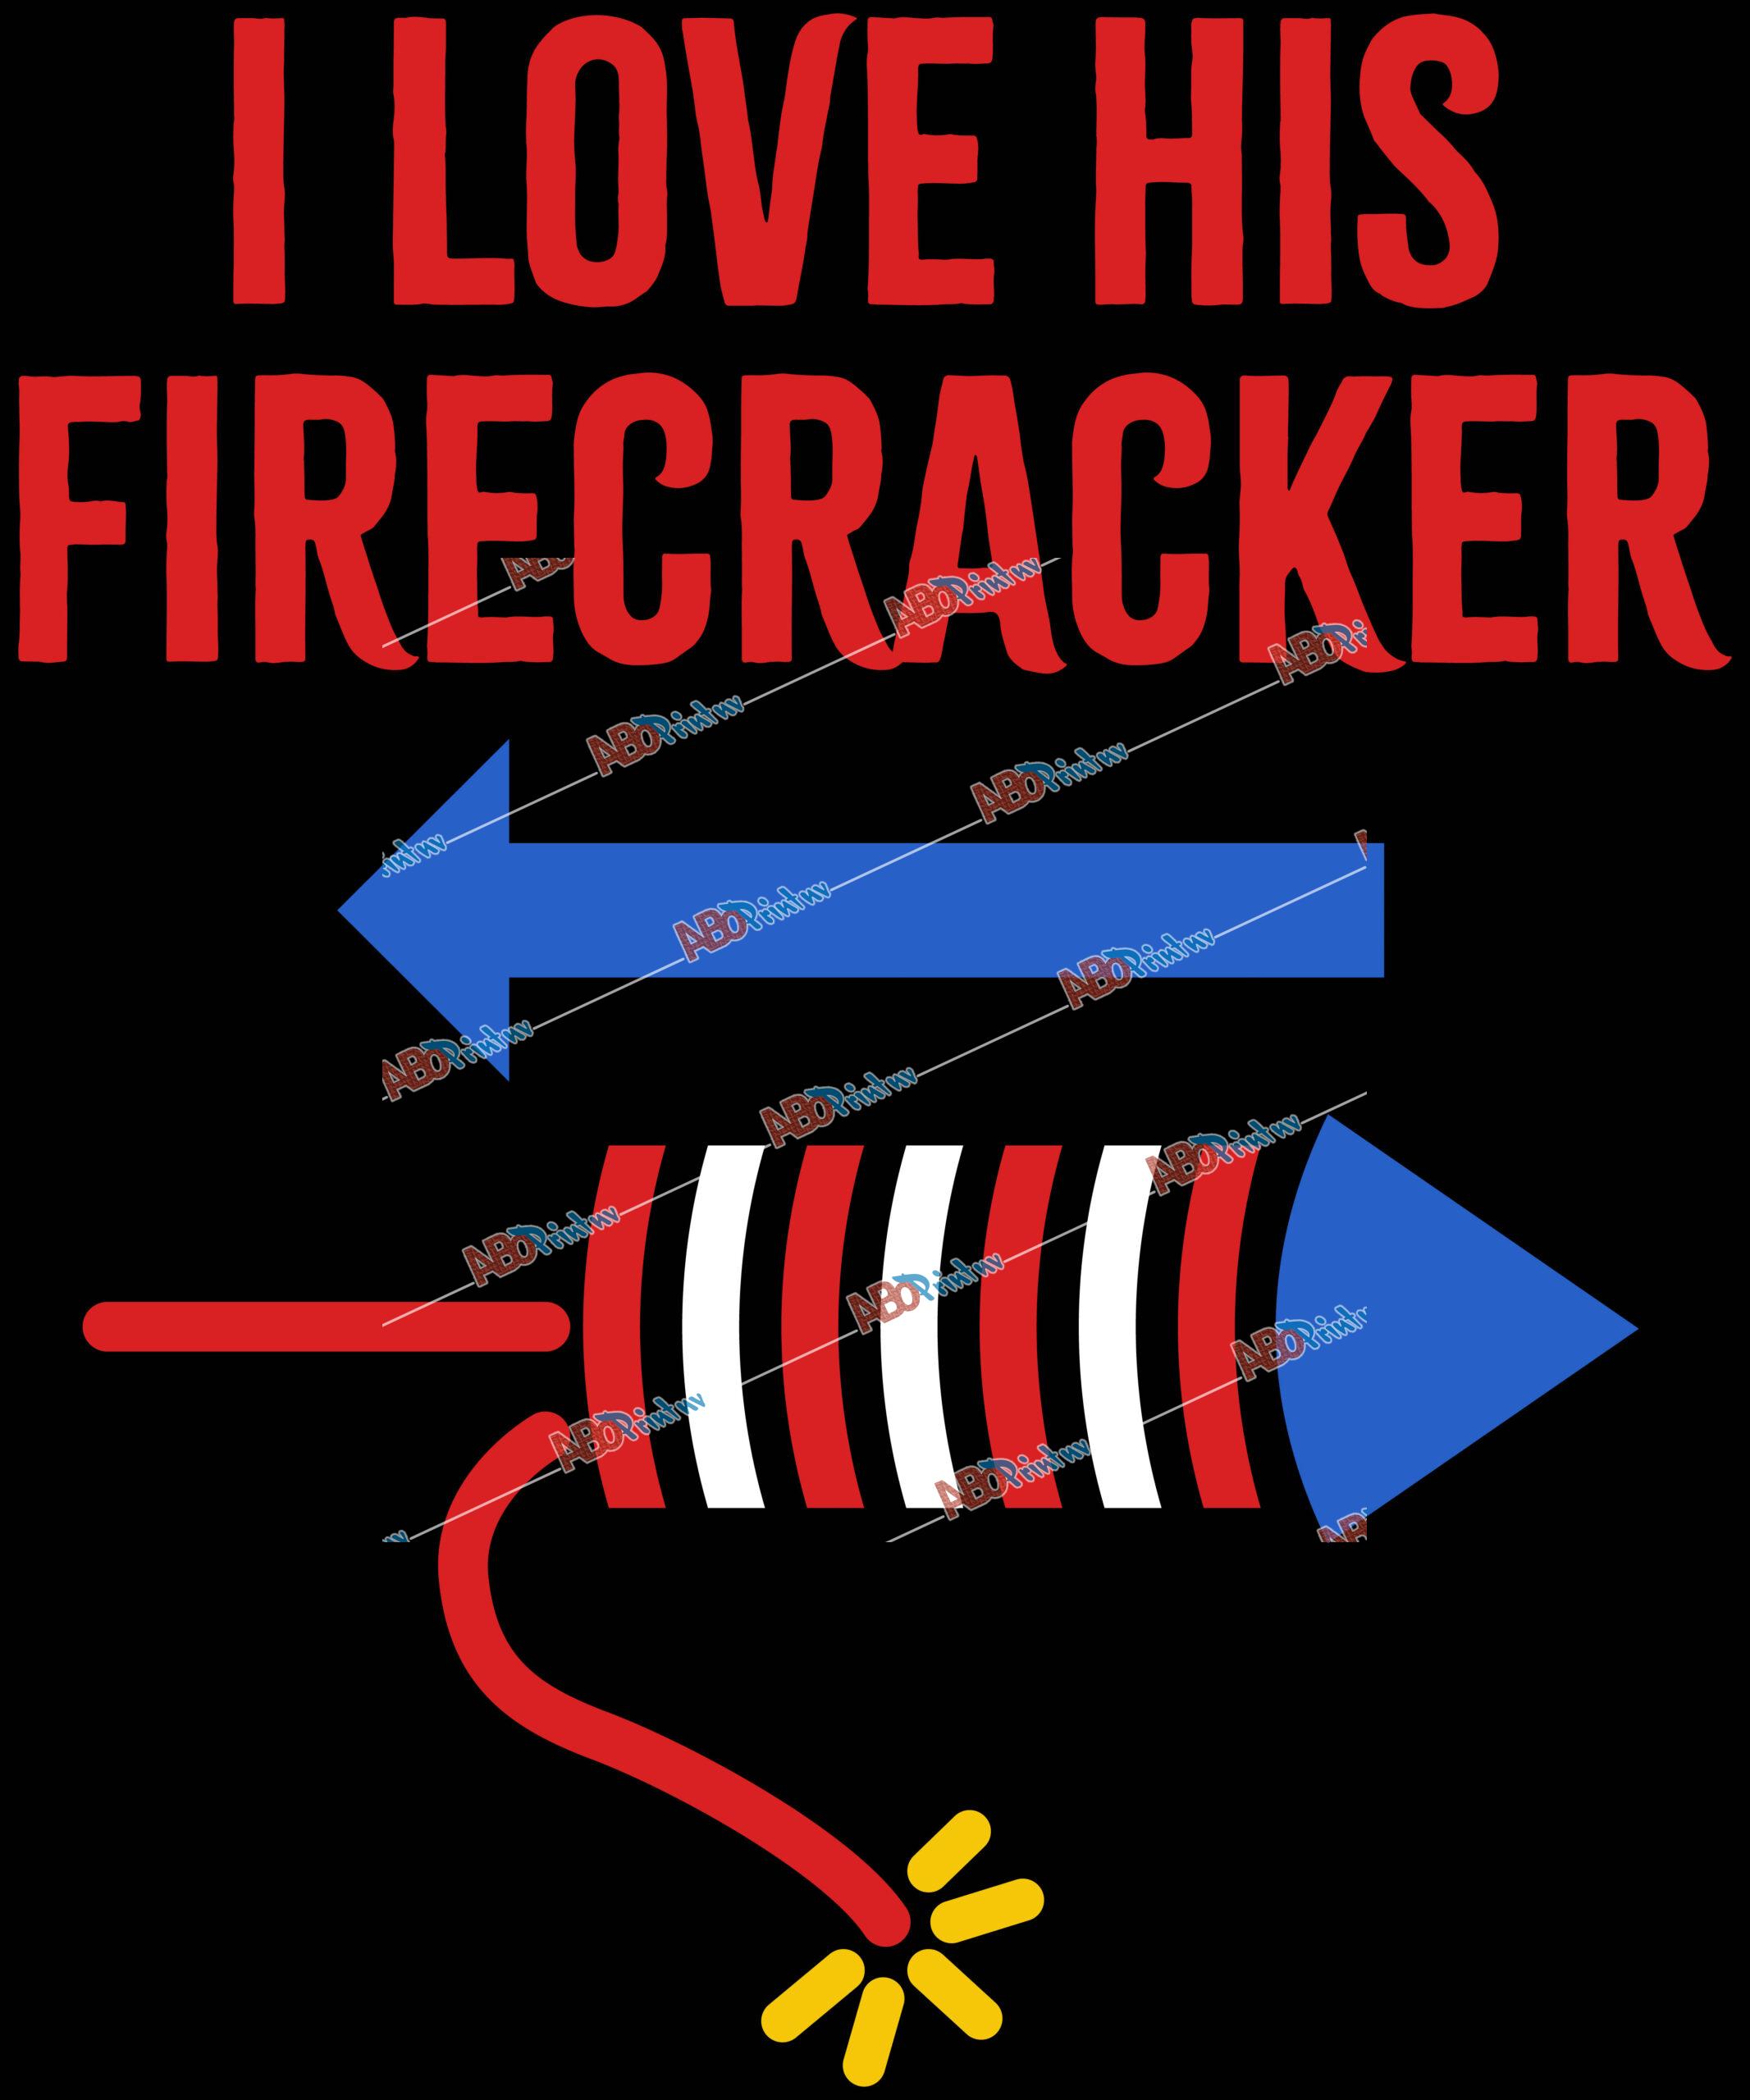 I Love His Firecracker.jpg